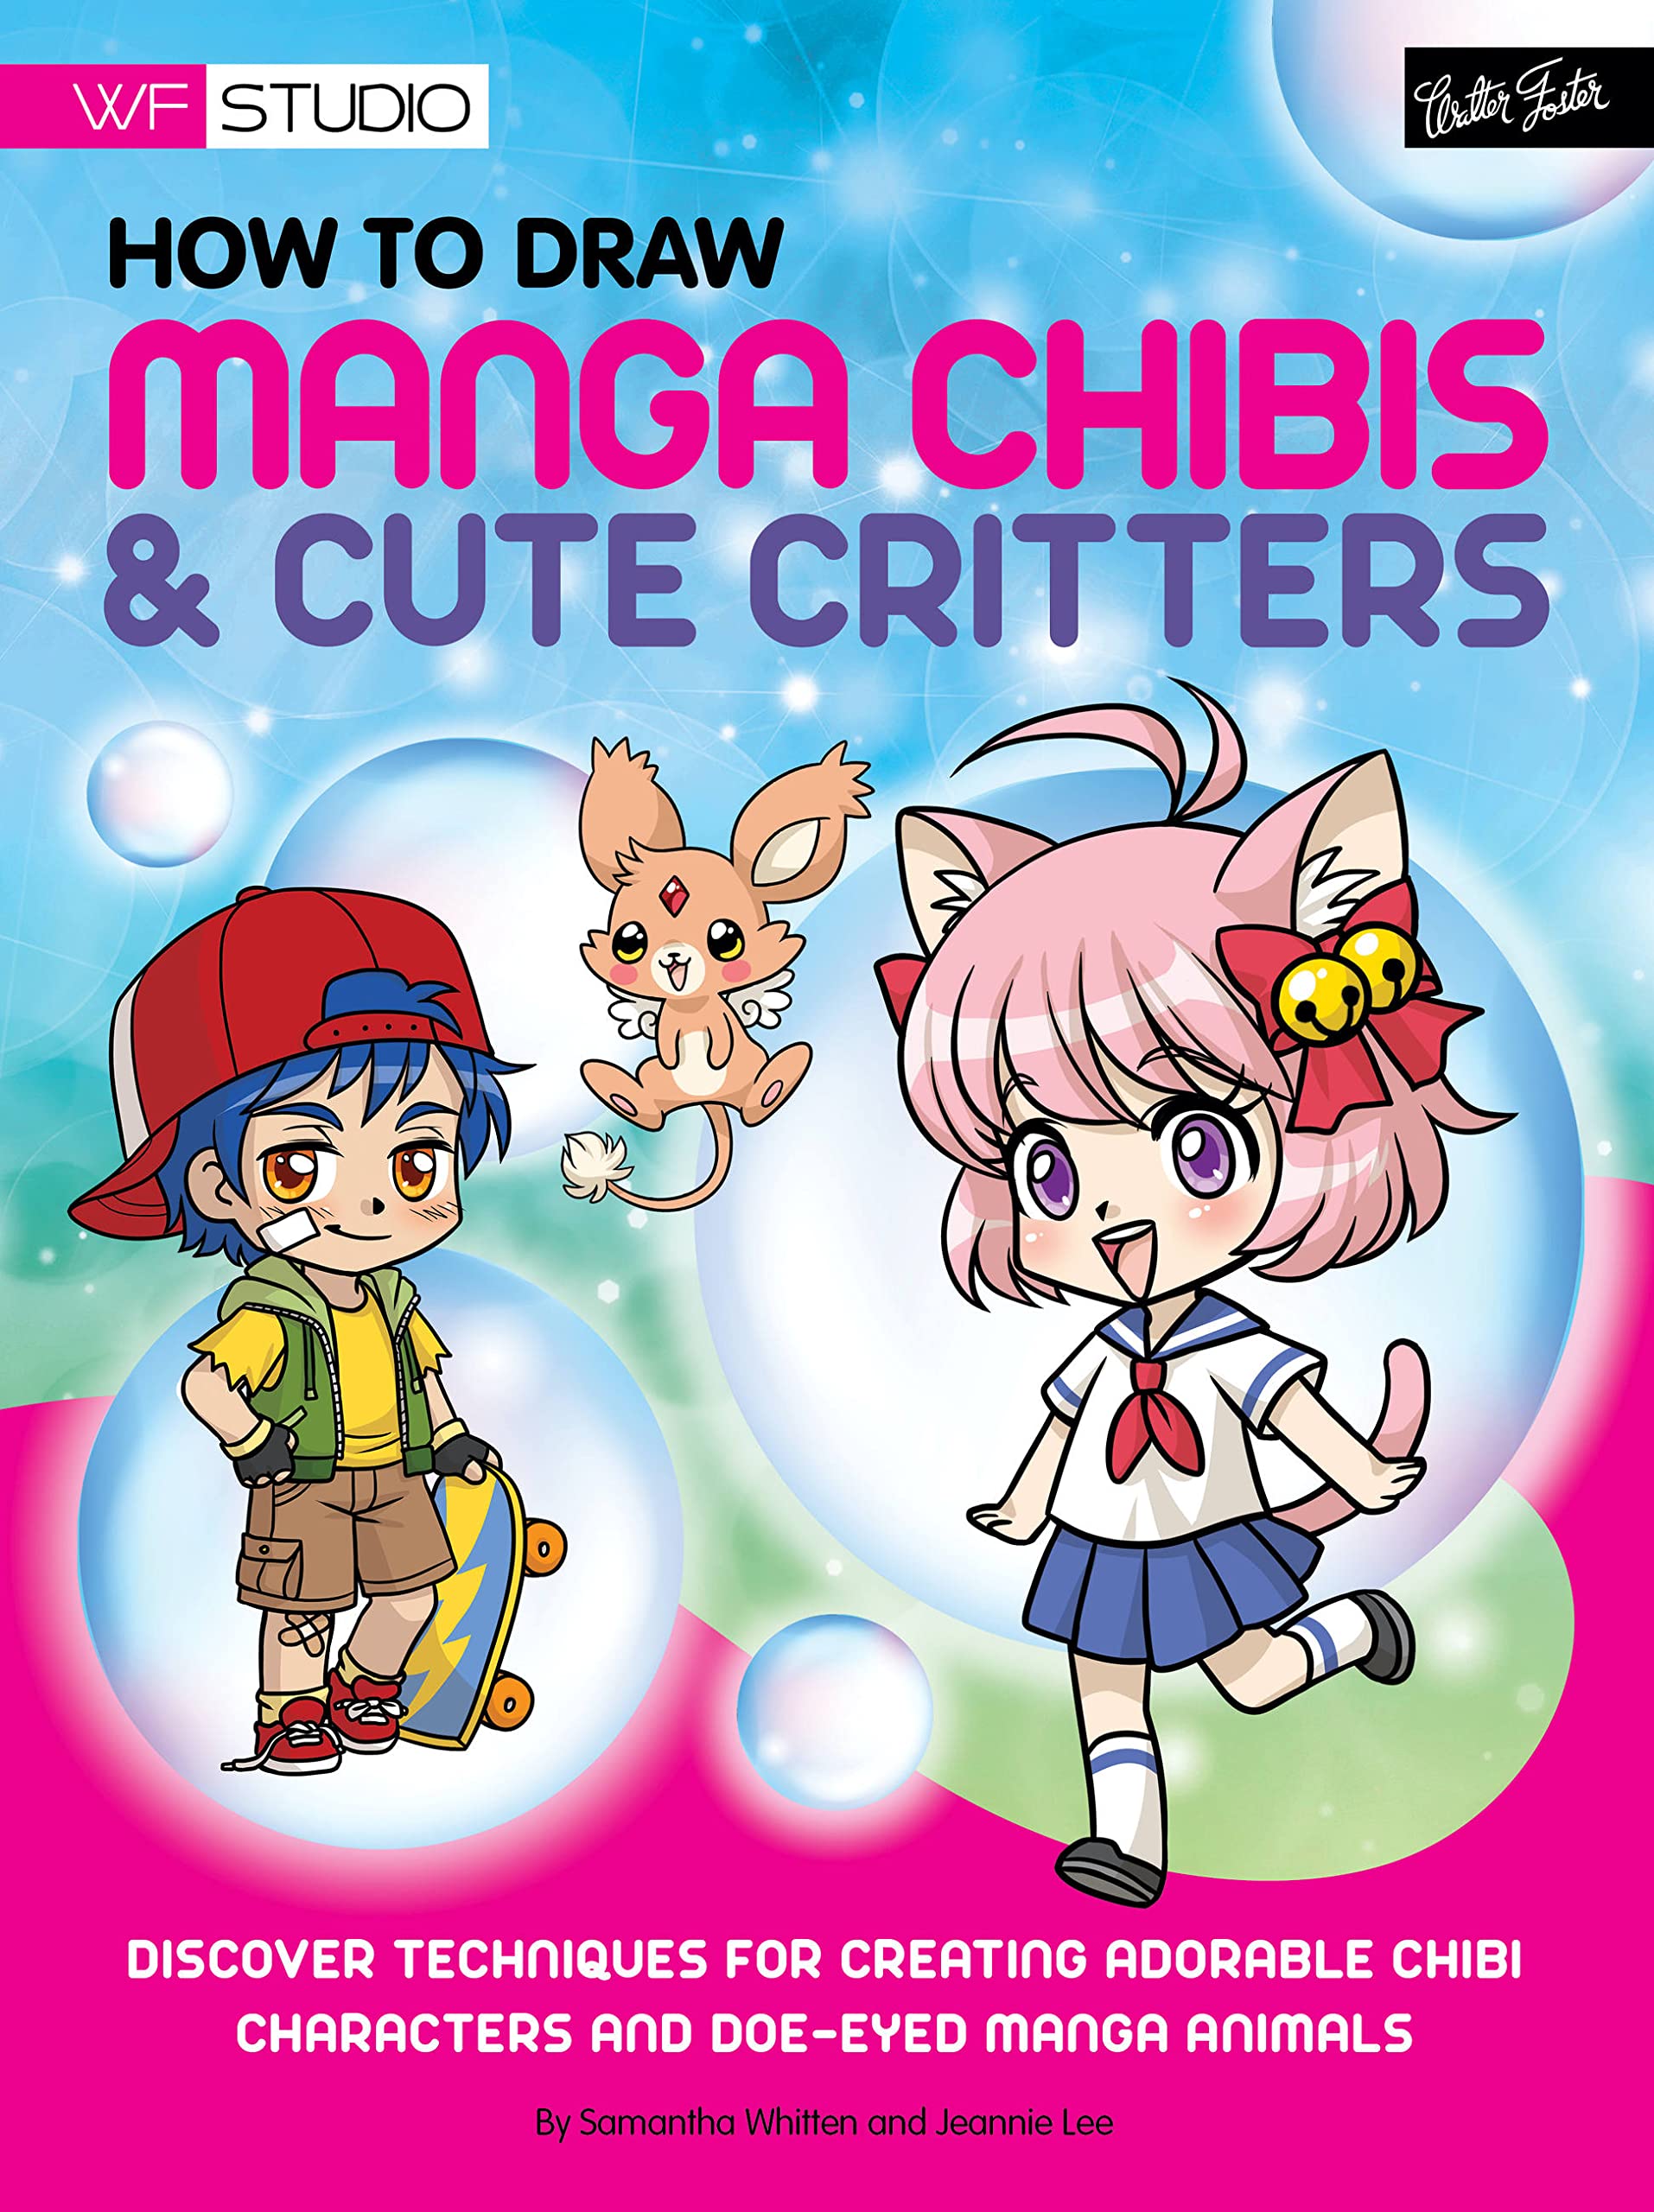 Đam mê vẽ tranh Manga Chibi và động vật dễ thương? Hãy sắm ngay cho mình cuốn sách hướng dẫn vẽ mới nhất để cải thiện kỹ năng và trau dồi kiến thức của mình. Với nhiều bài học thú vị và phong phú, chắc chắn bạn sẽ tìm được điểm sáng của mình trong thế giới vẽ tranh. Mua ngay để bắt đầu hành trình sáng tạo của mình!